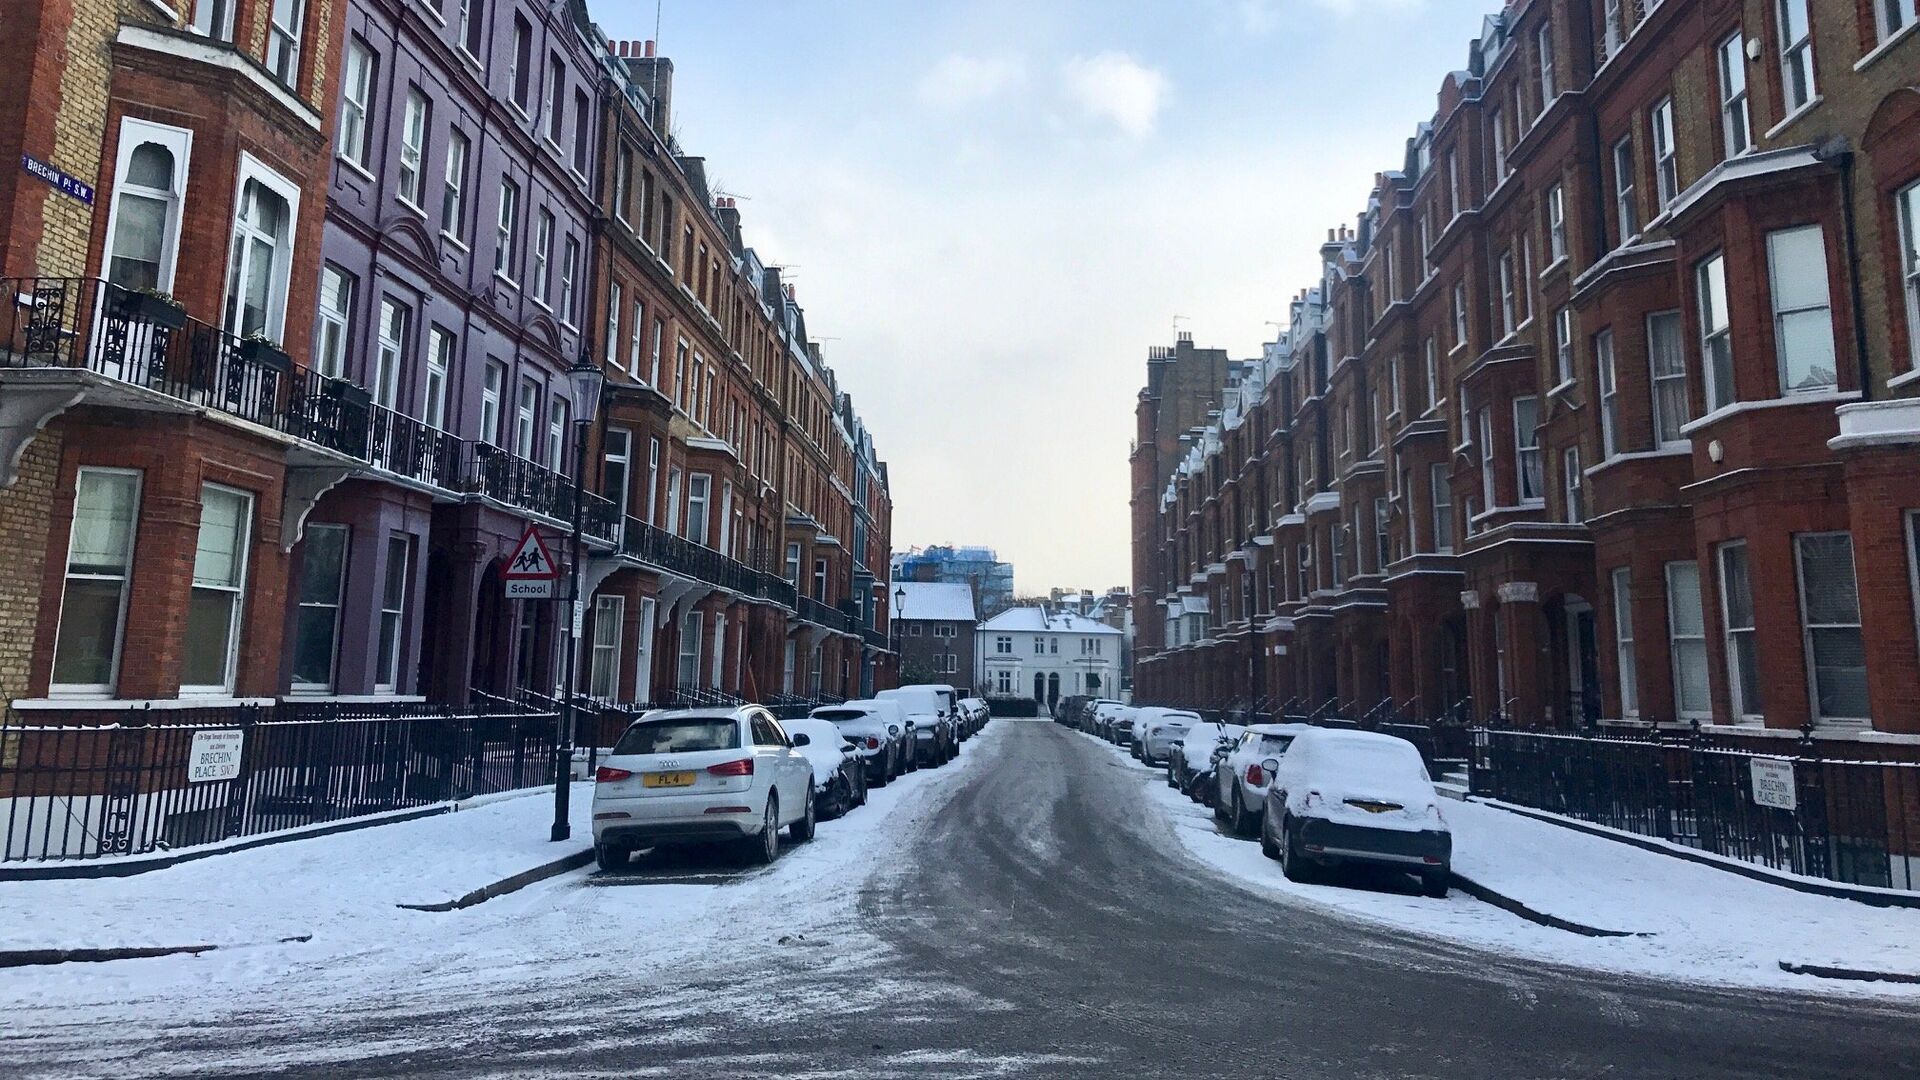 Снег, выпавший на улицах Лондона. 28 февраля 2018 - ИноСМИ, 1920, 03.04.2022